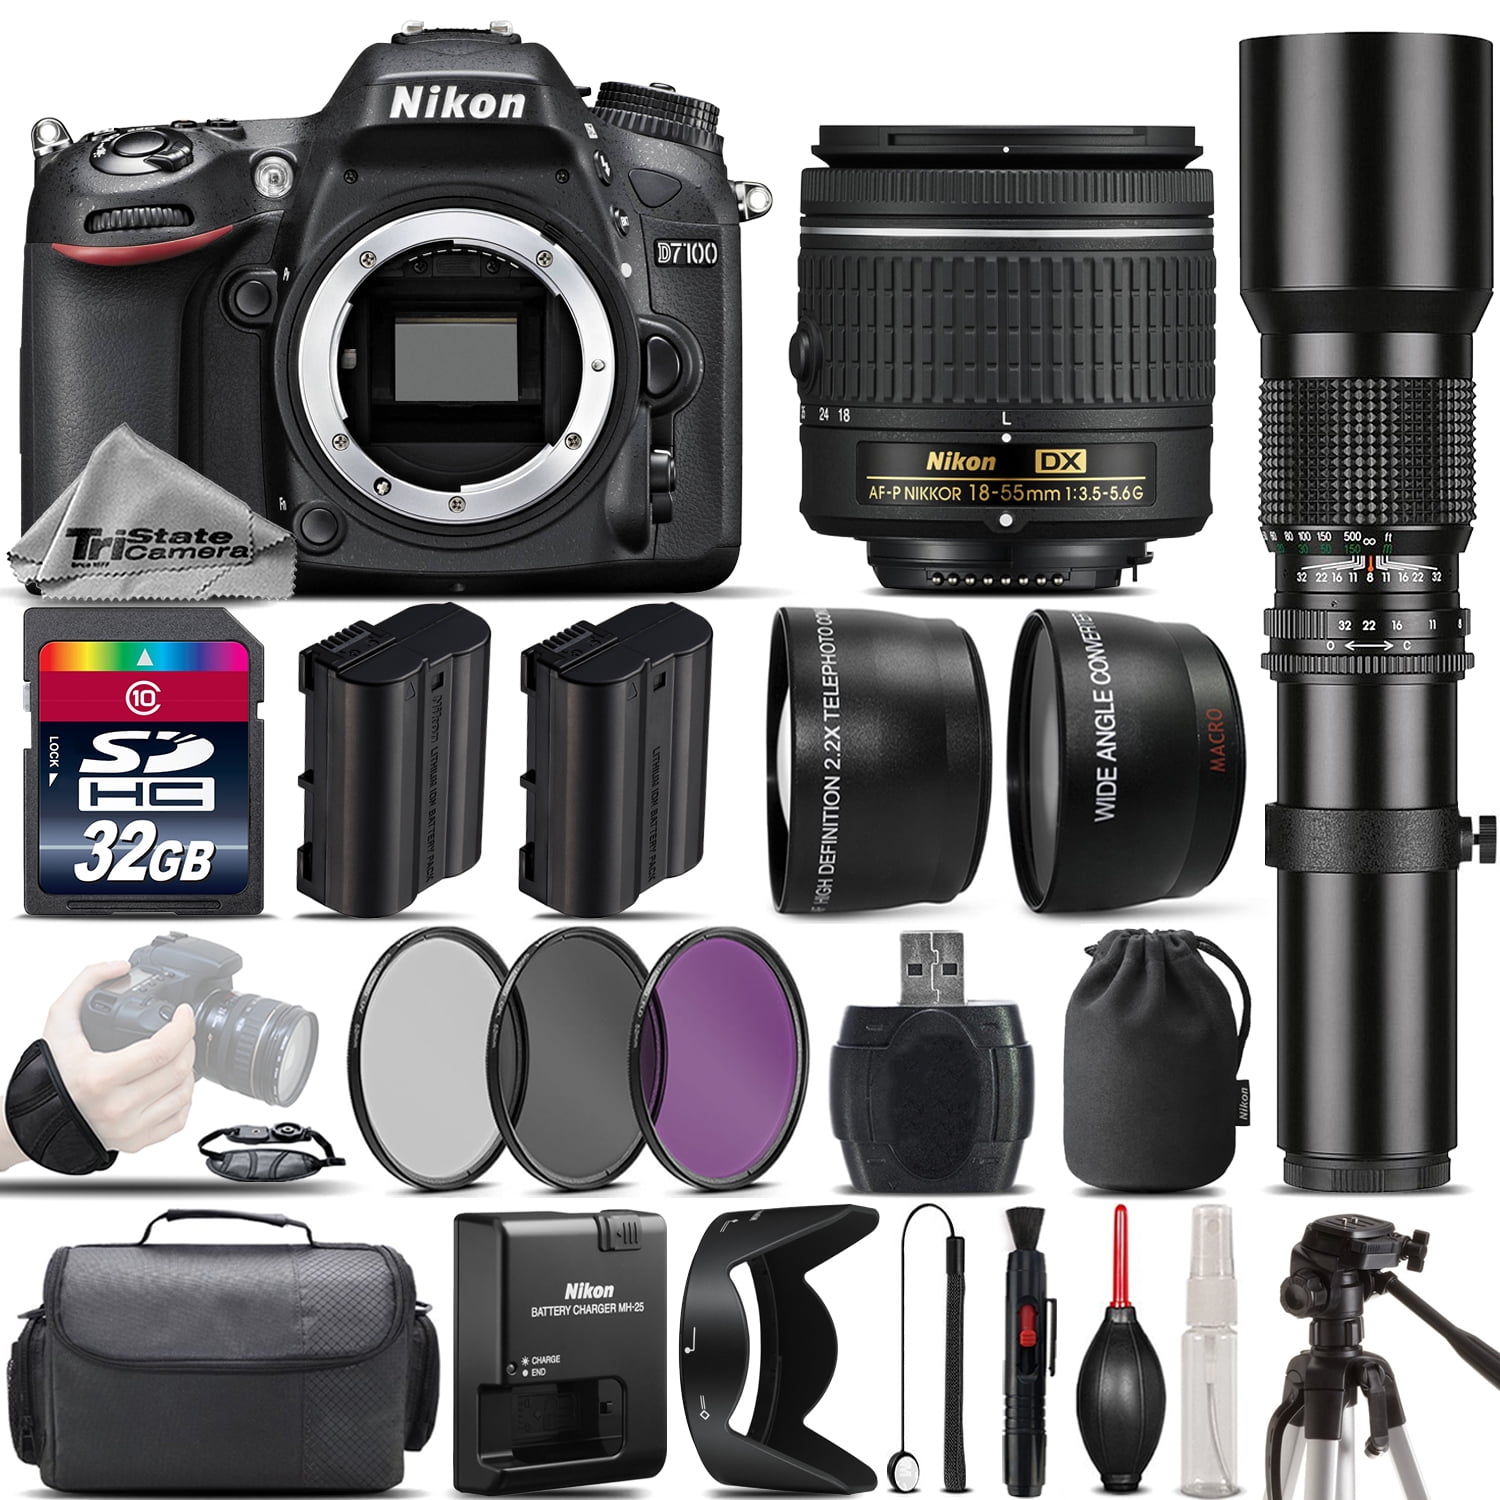 Nikon D7100 DSLR Camera + Nikon 18-55mm Lens + 500mm Telephoto